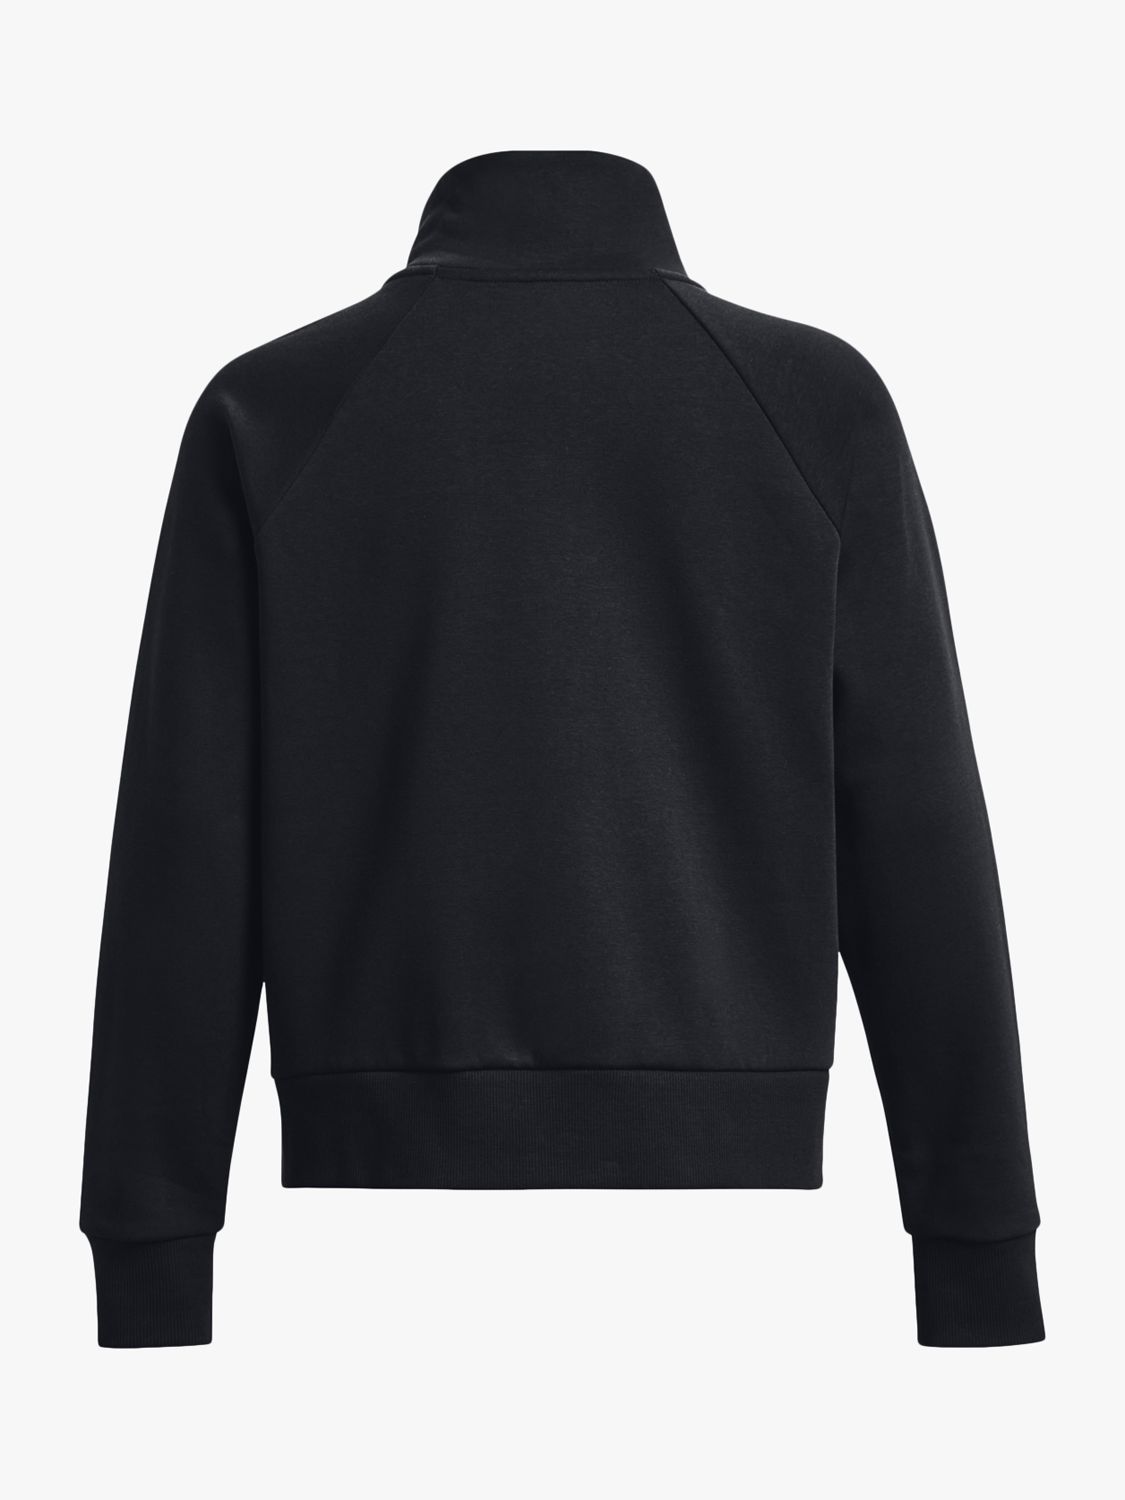 Black 1/2 Zip High Neck Sweatshirt